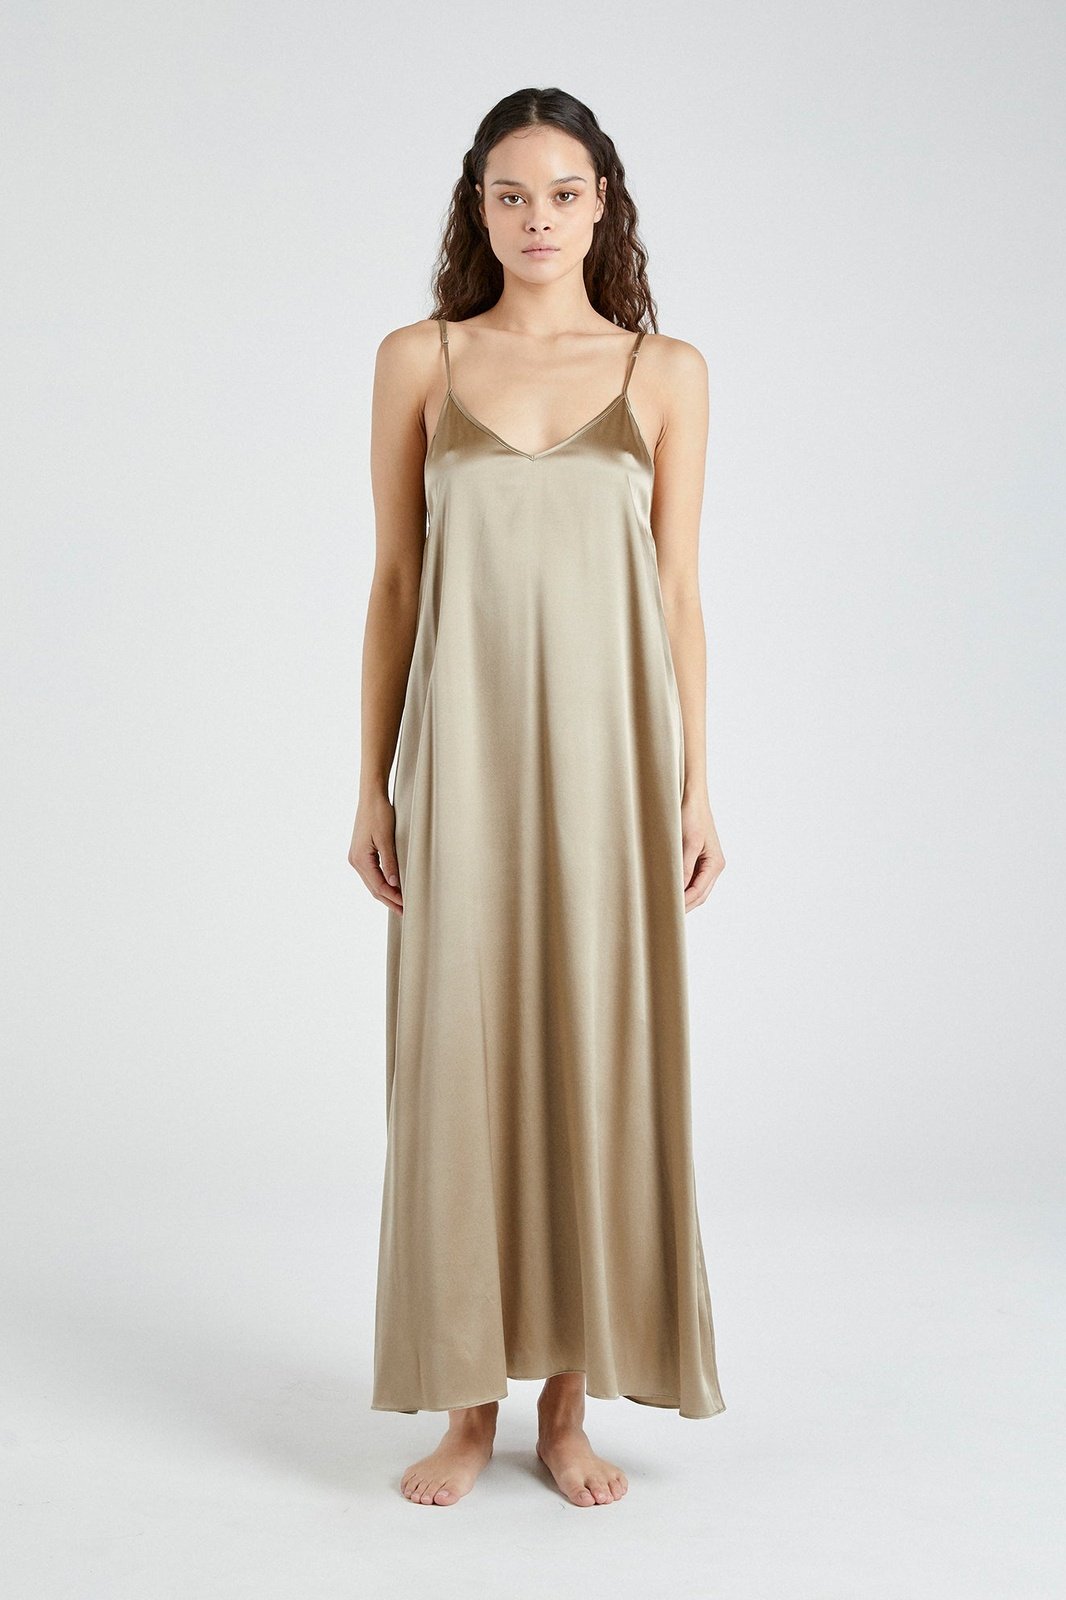 +Beryll Silk Dress Julie | Caramel - +Beryll Silk Dress Julie | Forest - +Beryll Worn By Good People